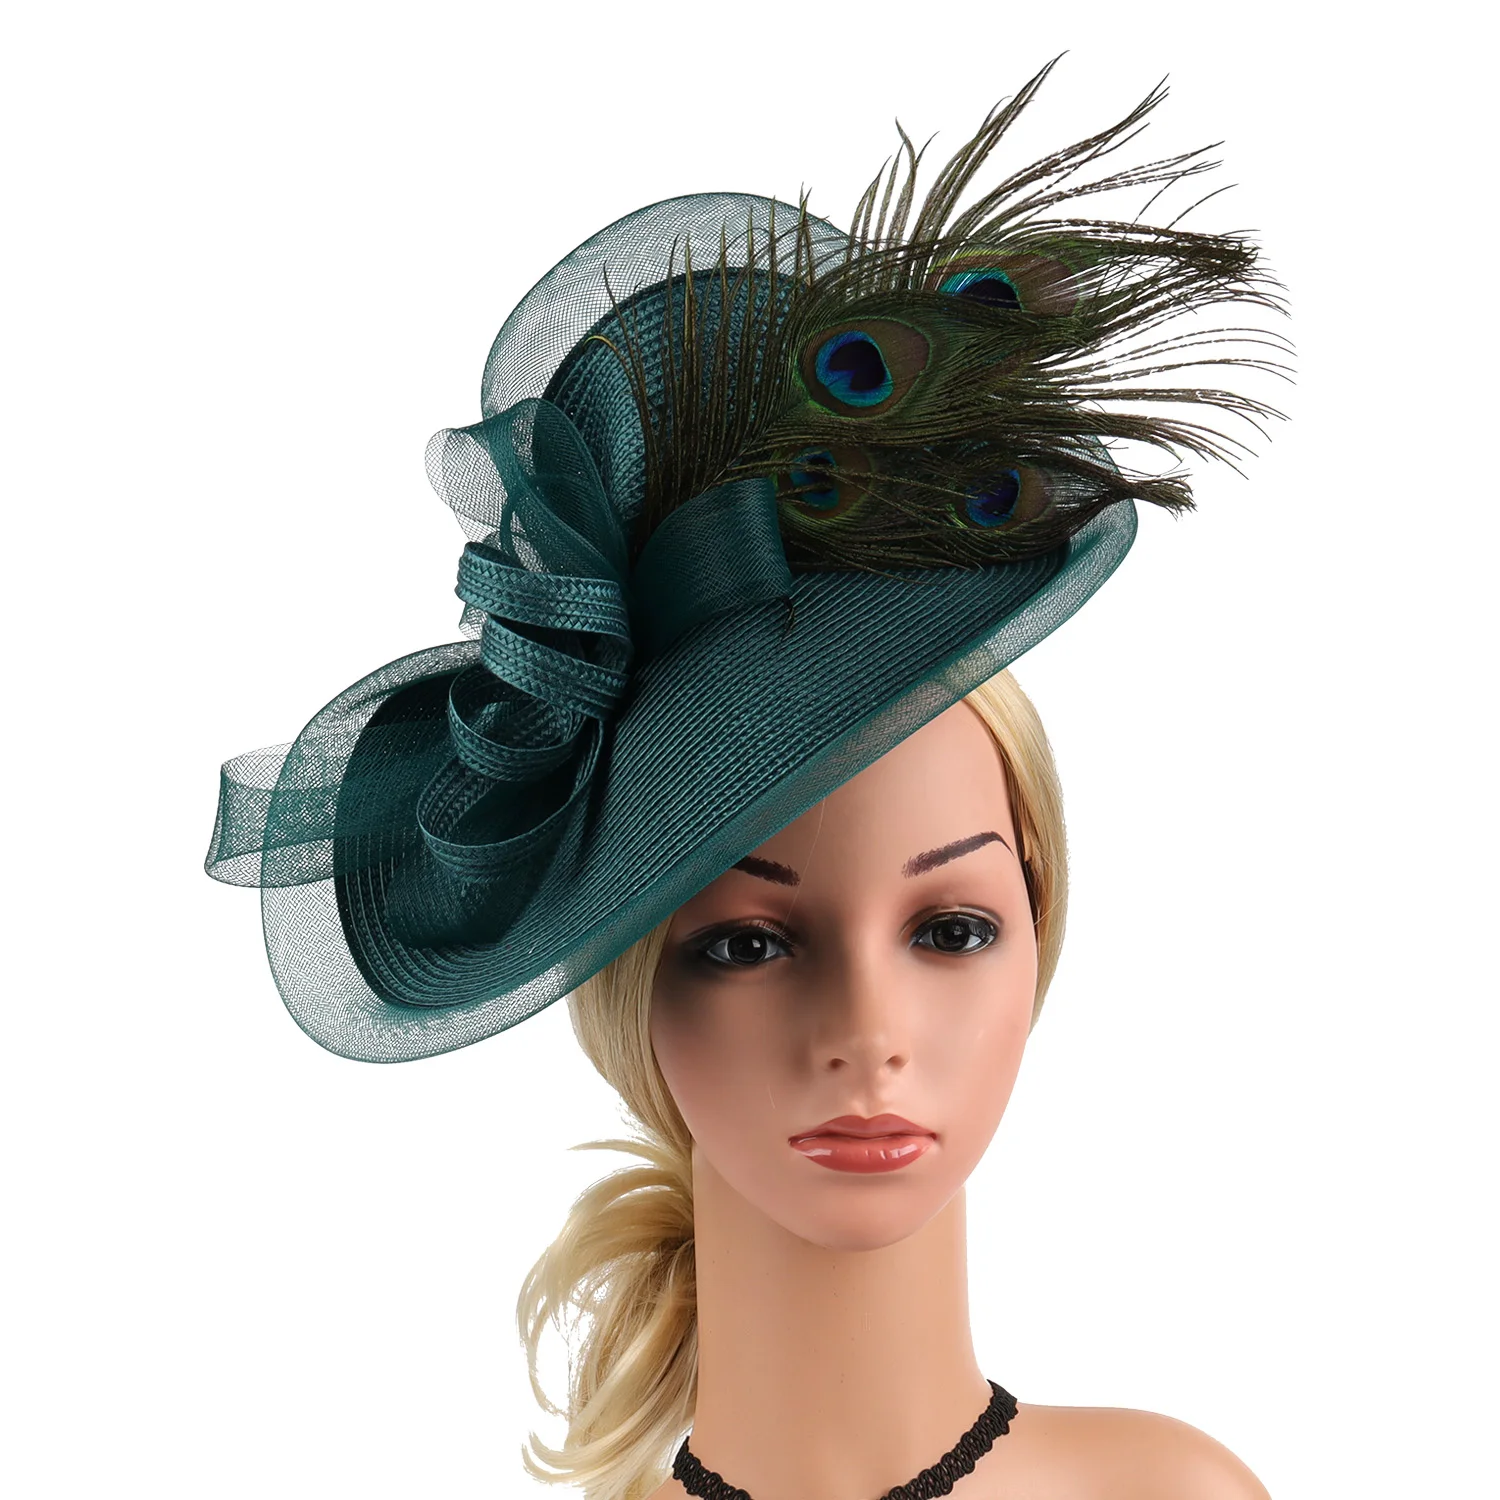 

Newest Premium Fascinator Kentucky Derby Hat Fashion Straw Wedding Photography Hat for Women Ladies